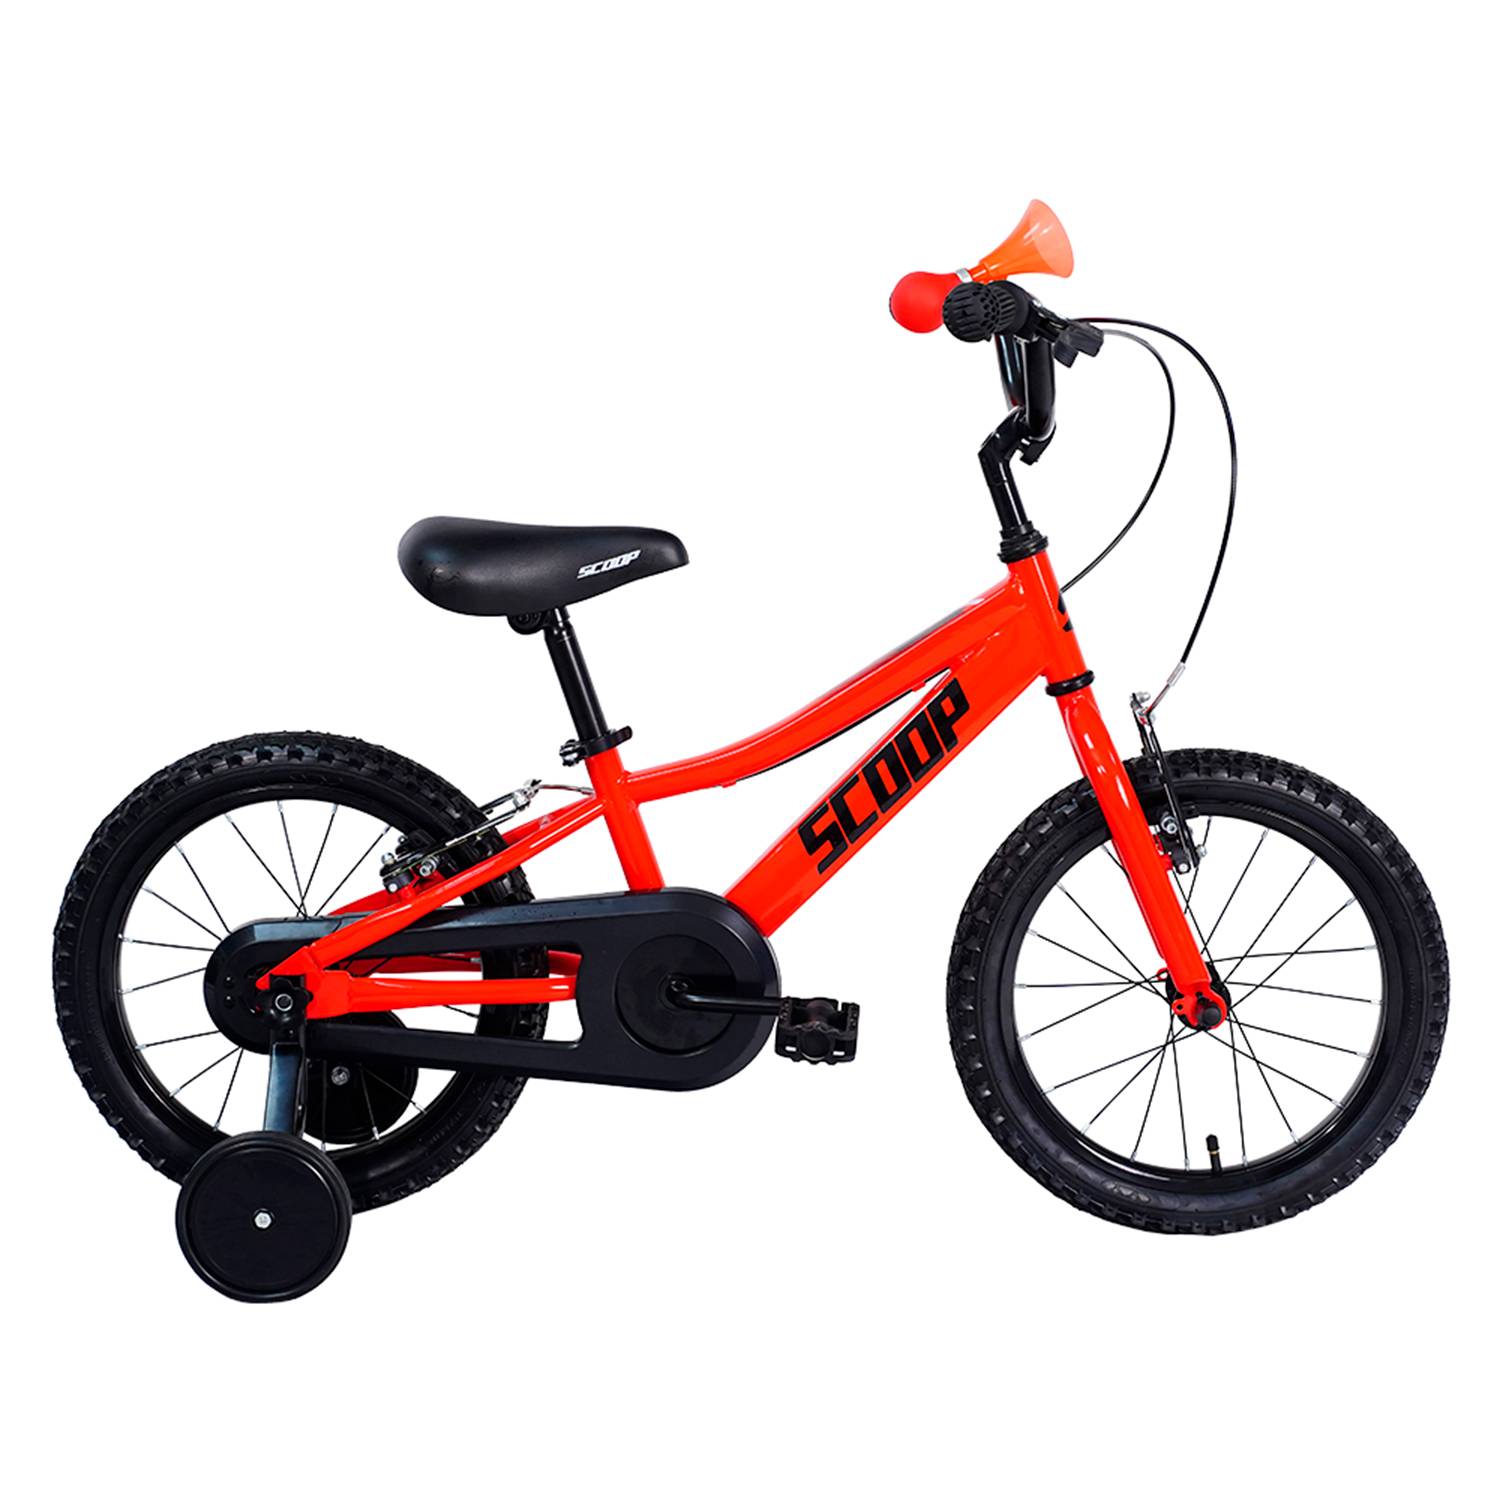 Bicicleta niño 16 pulgadas Cloot ROBIN-Bici niño de 4,5,6 años